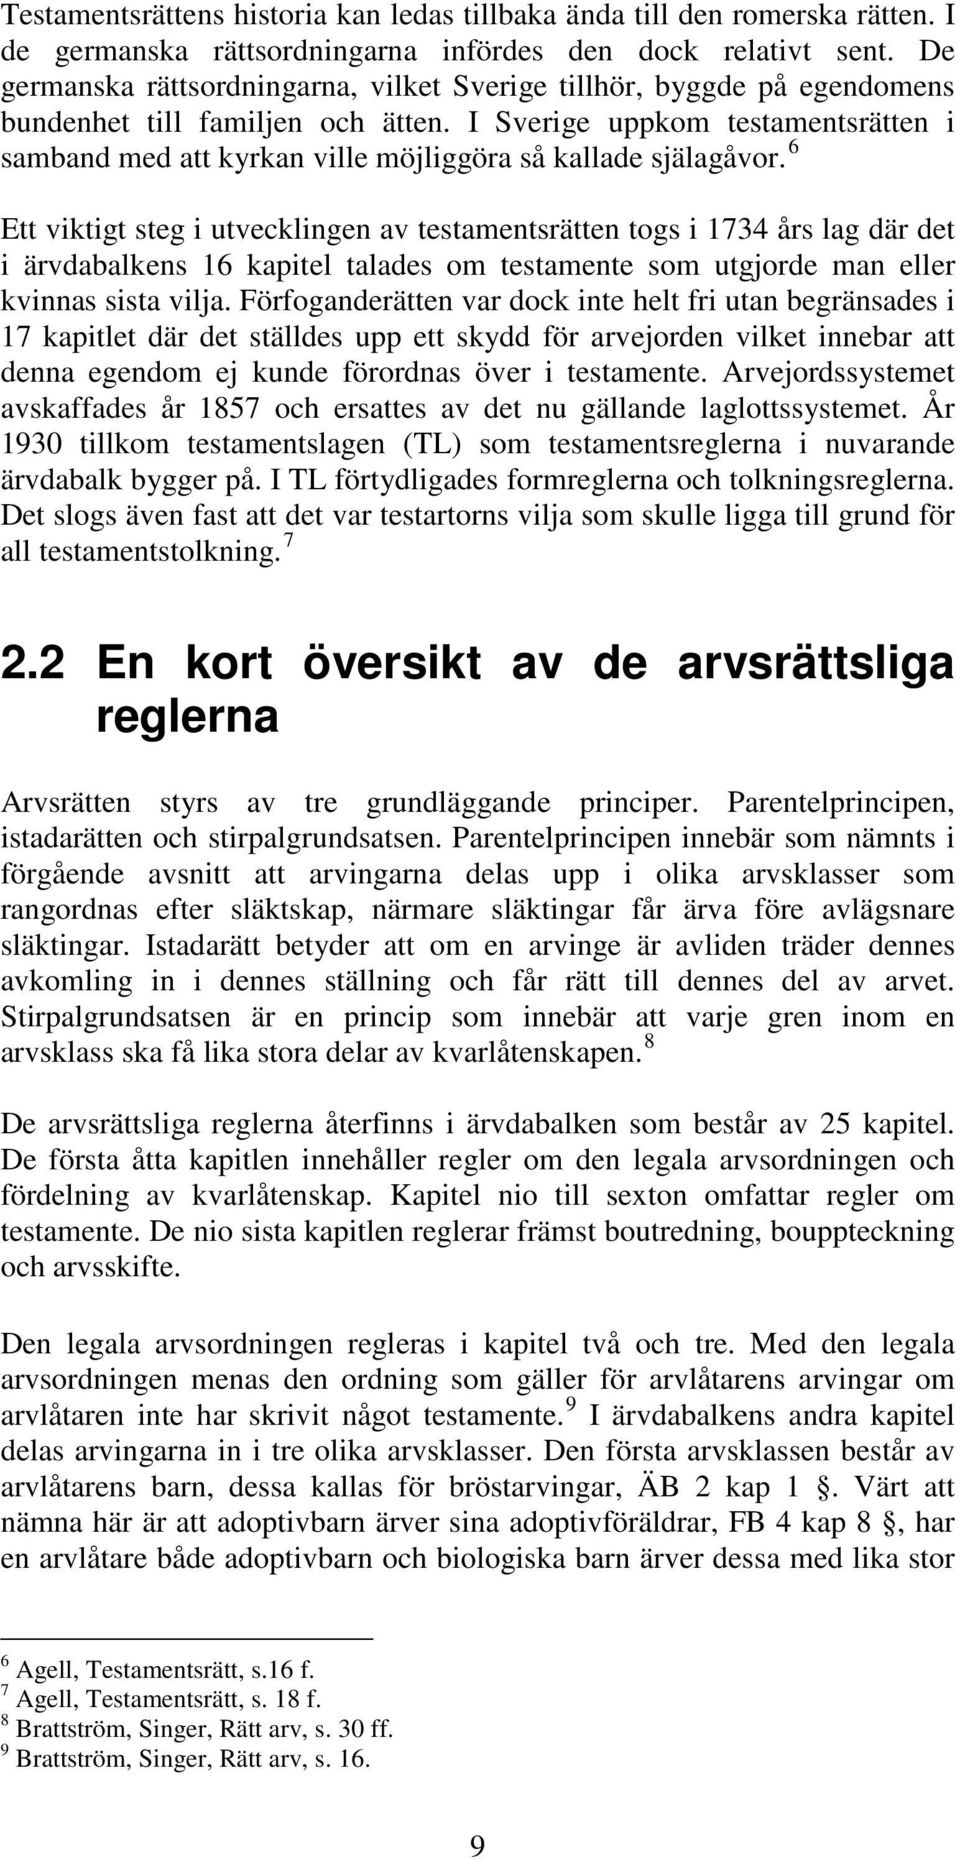 I Sverige uppkom testamentsrätten i samband med att kyrkan ville möjliggöra så kallade själagåvor.